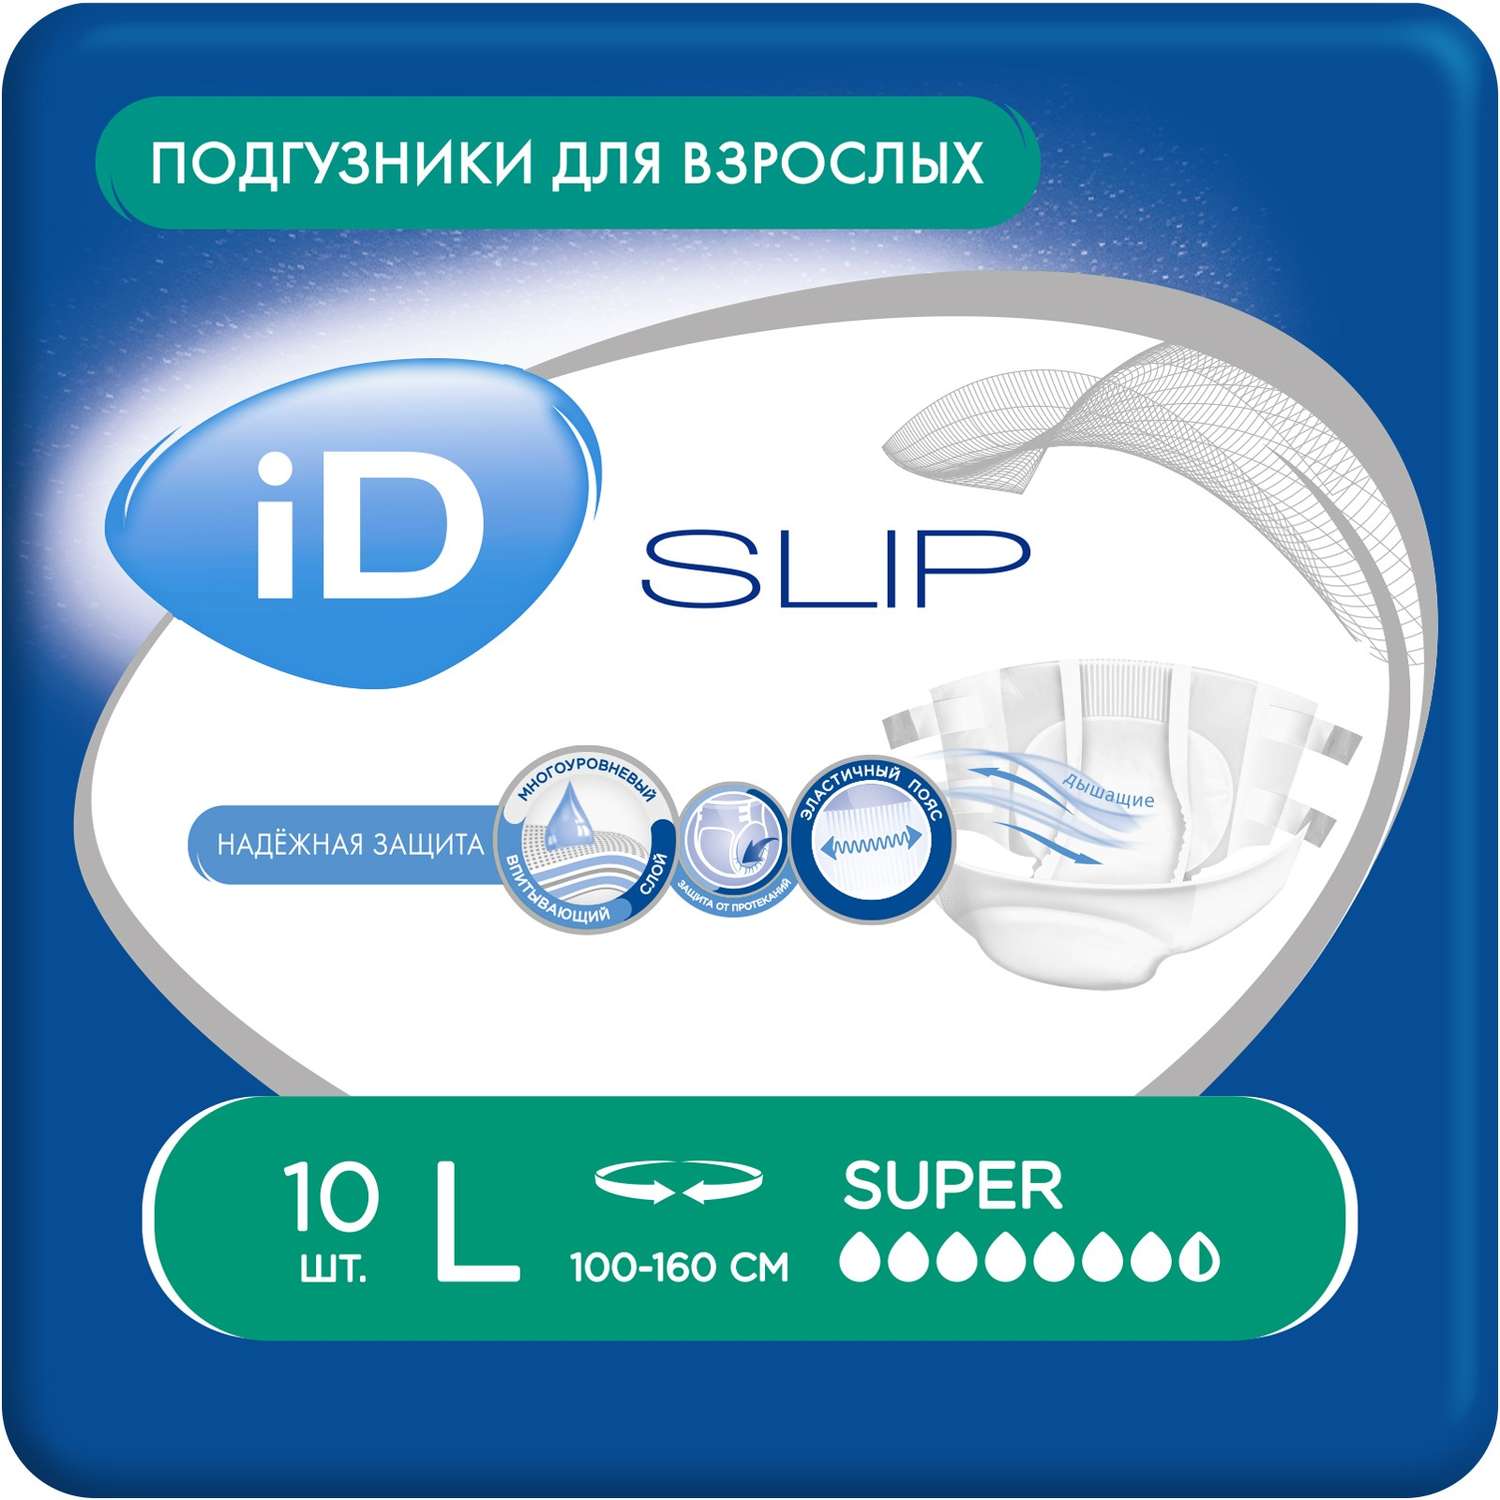 Подгузники для взрослых iD SLIP L 10 шт. - фото 1